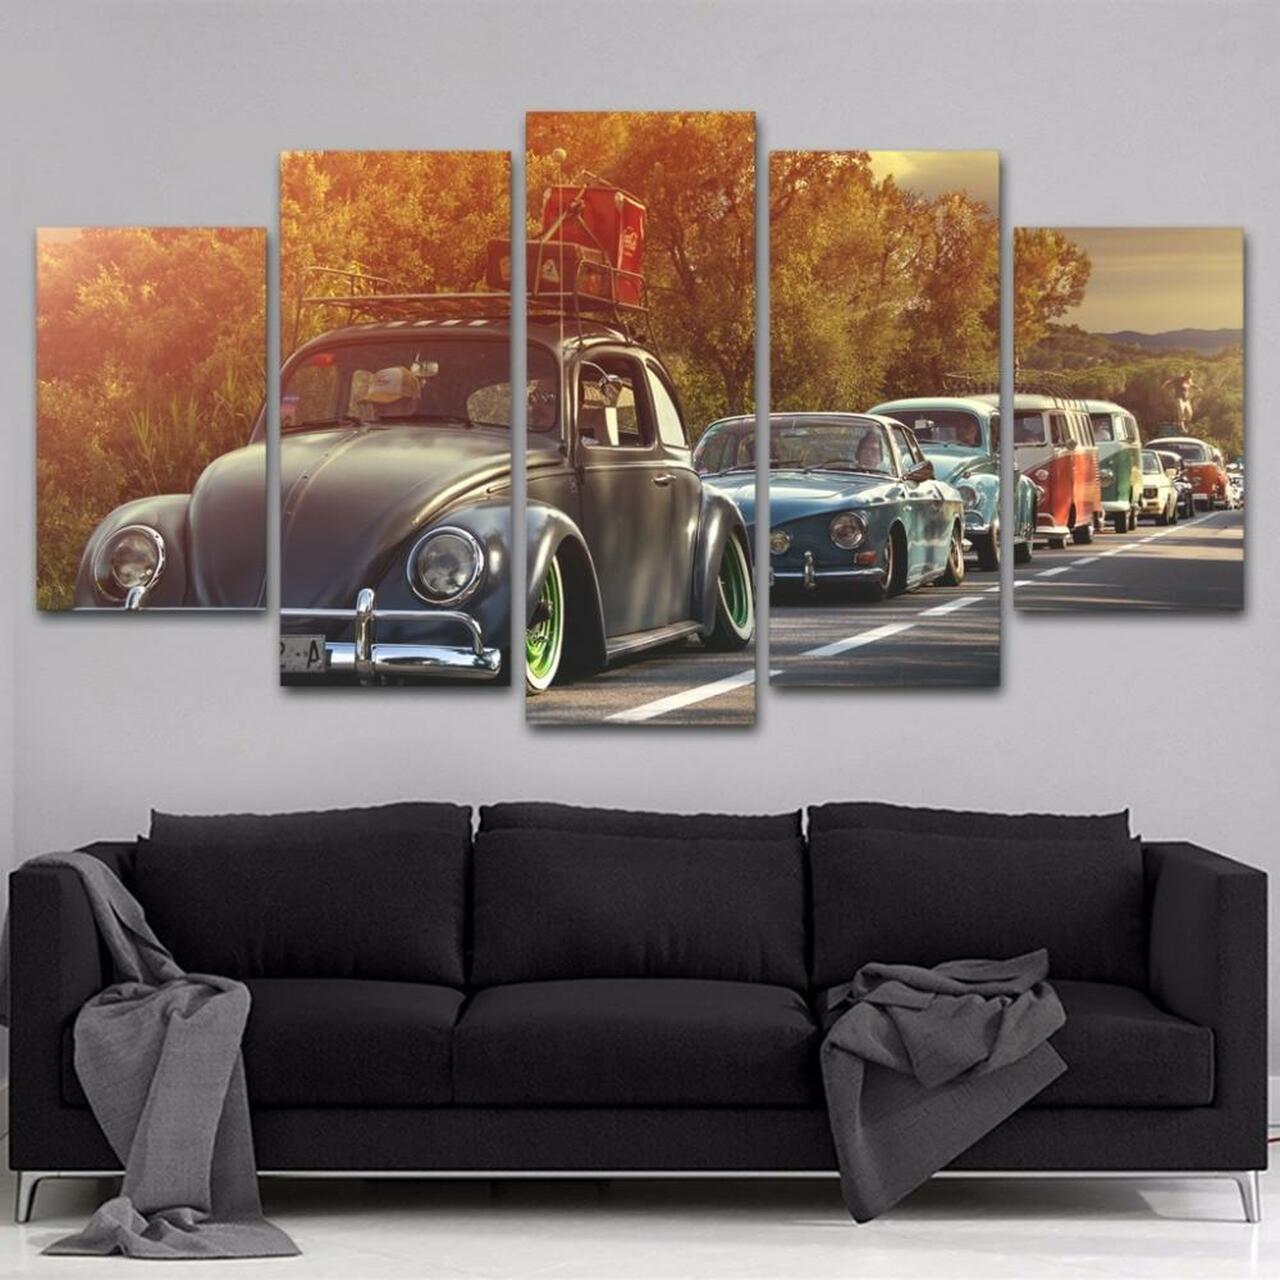 volkswagen classic cars 5 pices peinture sur toile impression sur toile toile art pour la dcoration intrieureckgw8